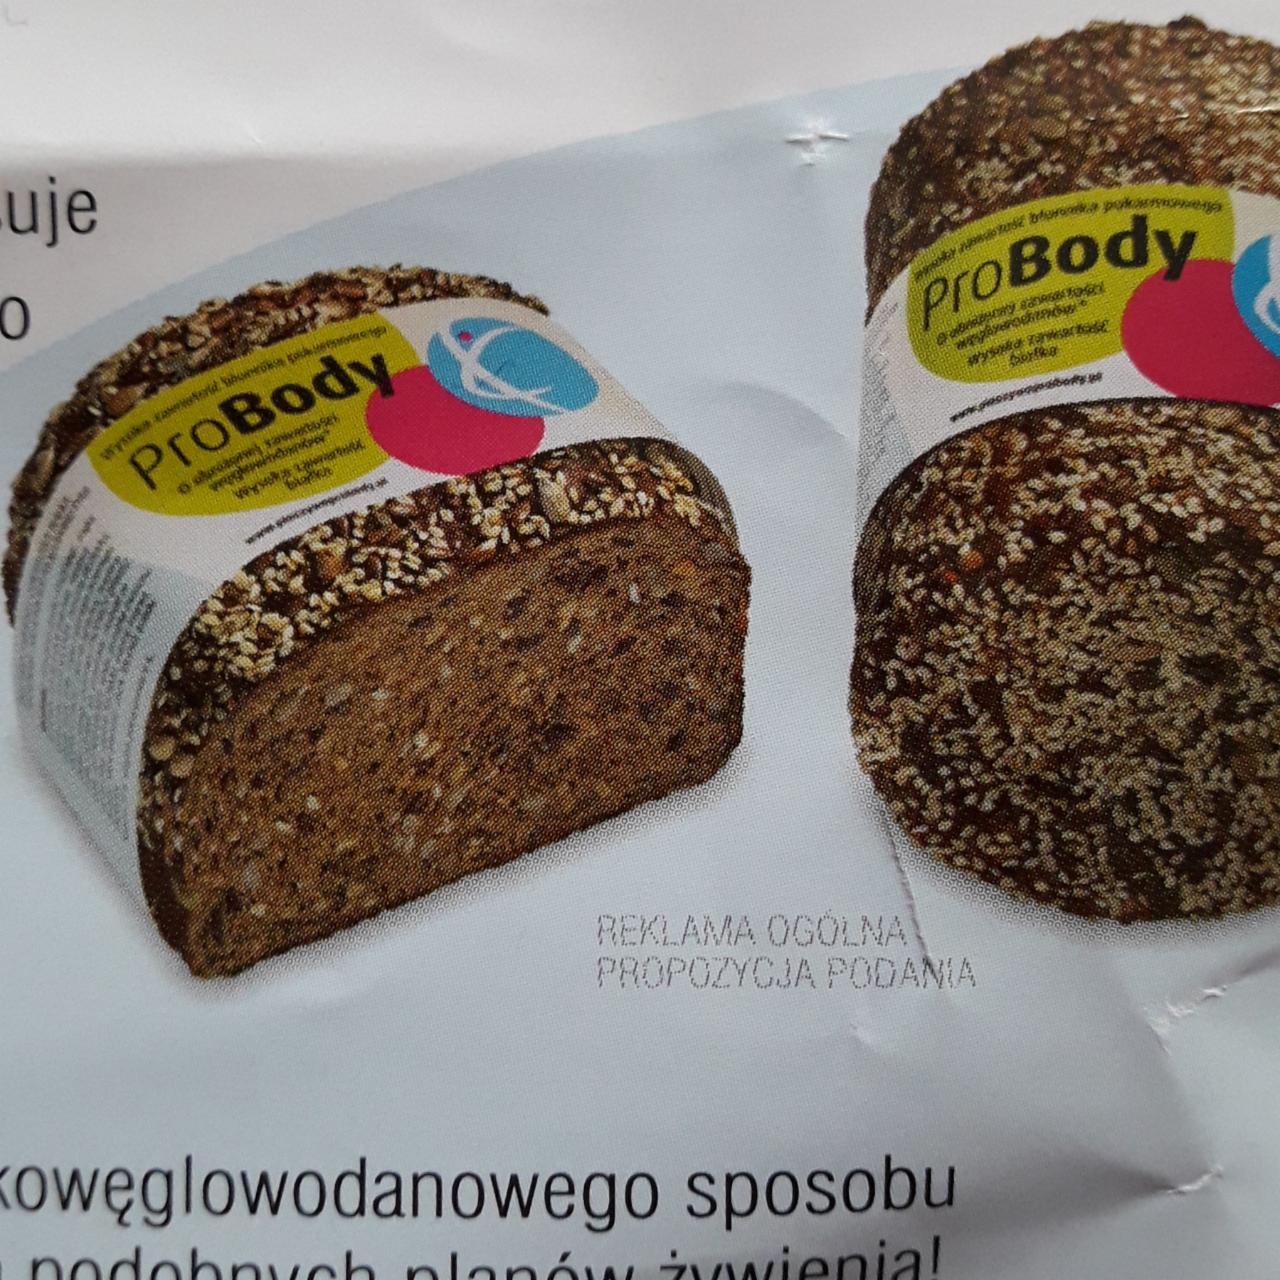 Zdjęcia - chleb wysokobiałkowy ProBody